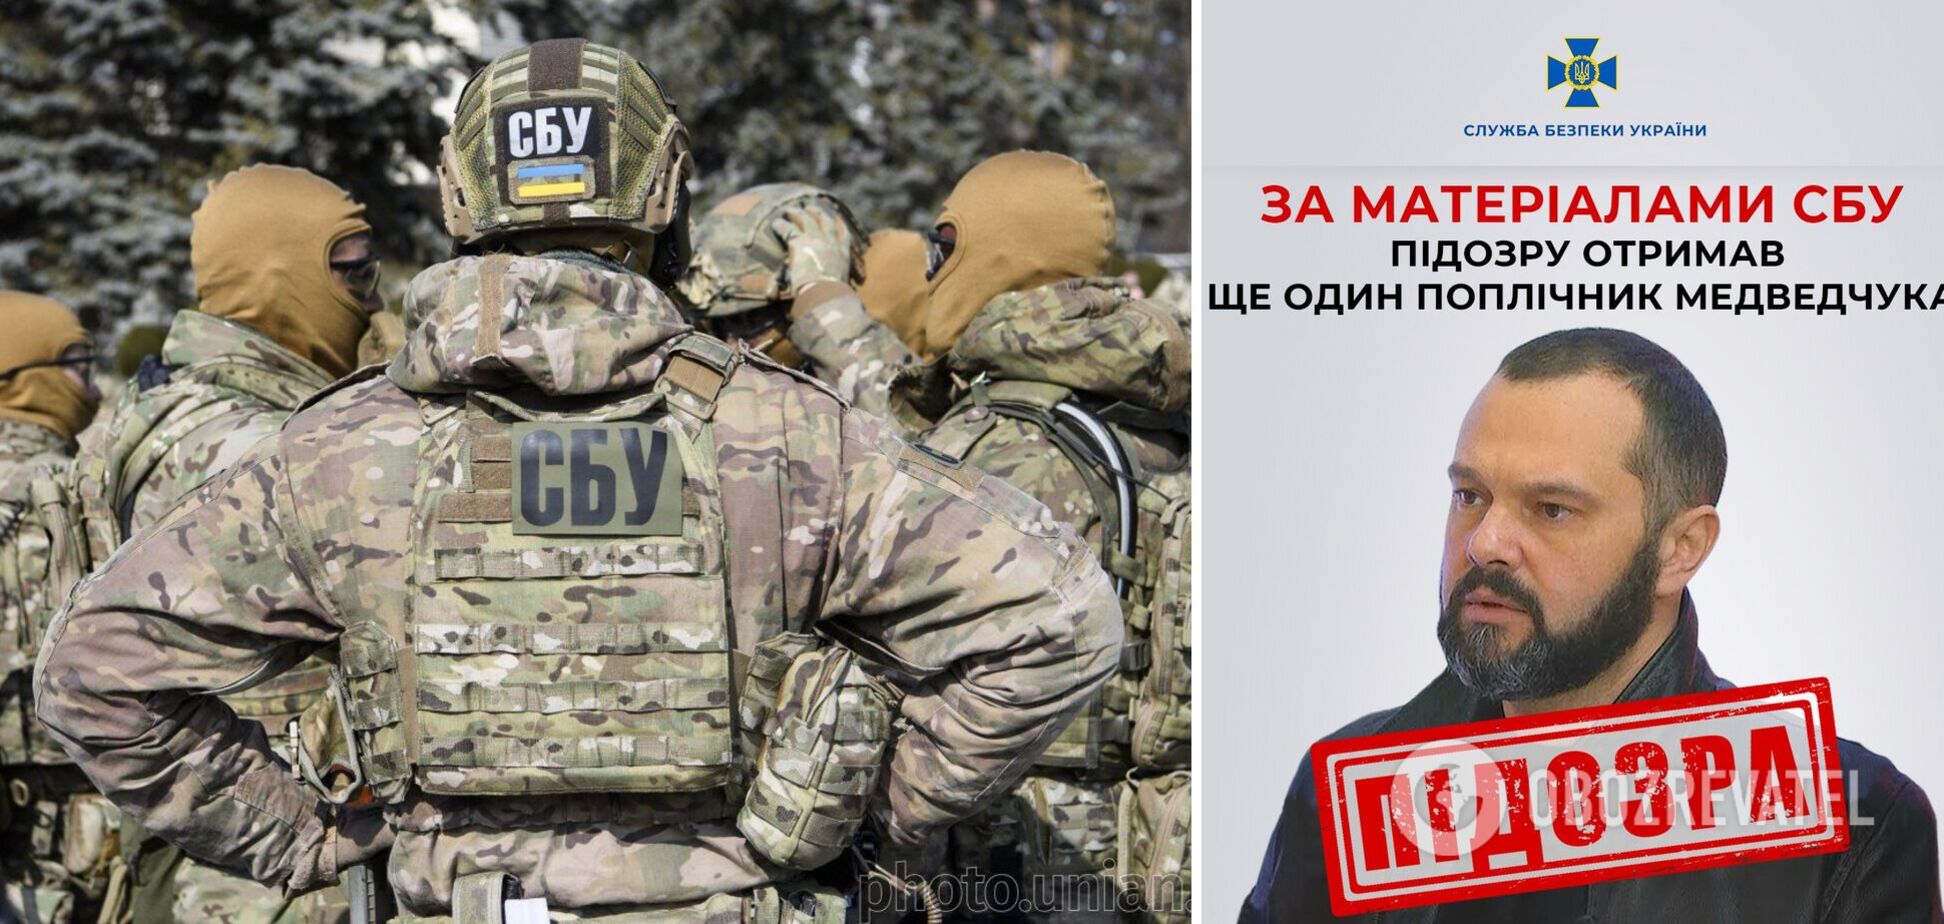 СБУ сообщила о подозрении приспешнику Медведчука: работал на телеканалах кума Путина и возглавлял запрещенную партию. Фото